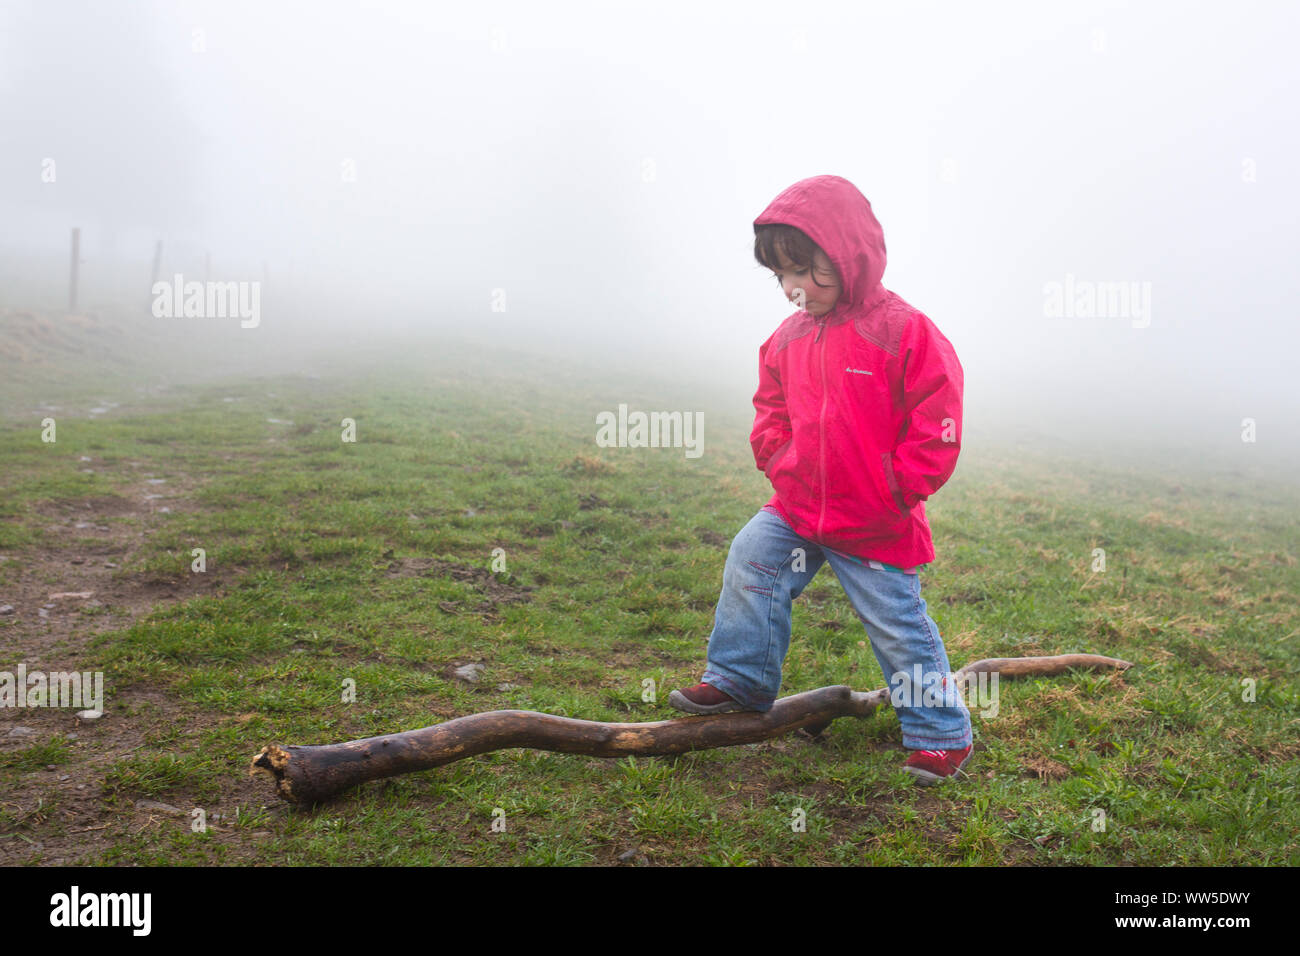 5-anno-vecchia ragazza con giacca rossa di andare a fare una passeggiata nella nebbia Foto Stock